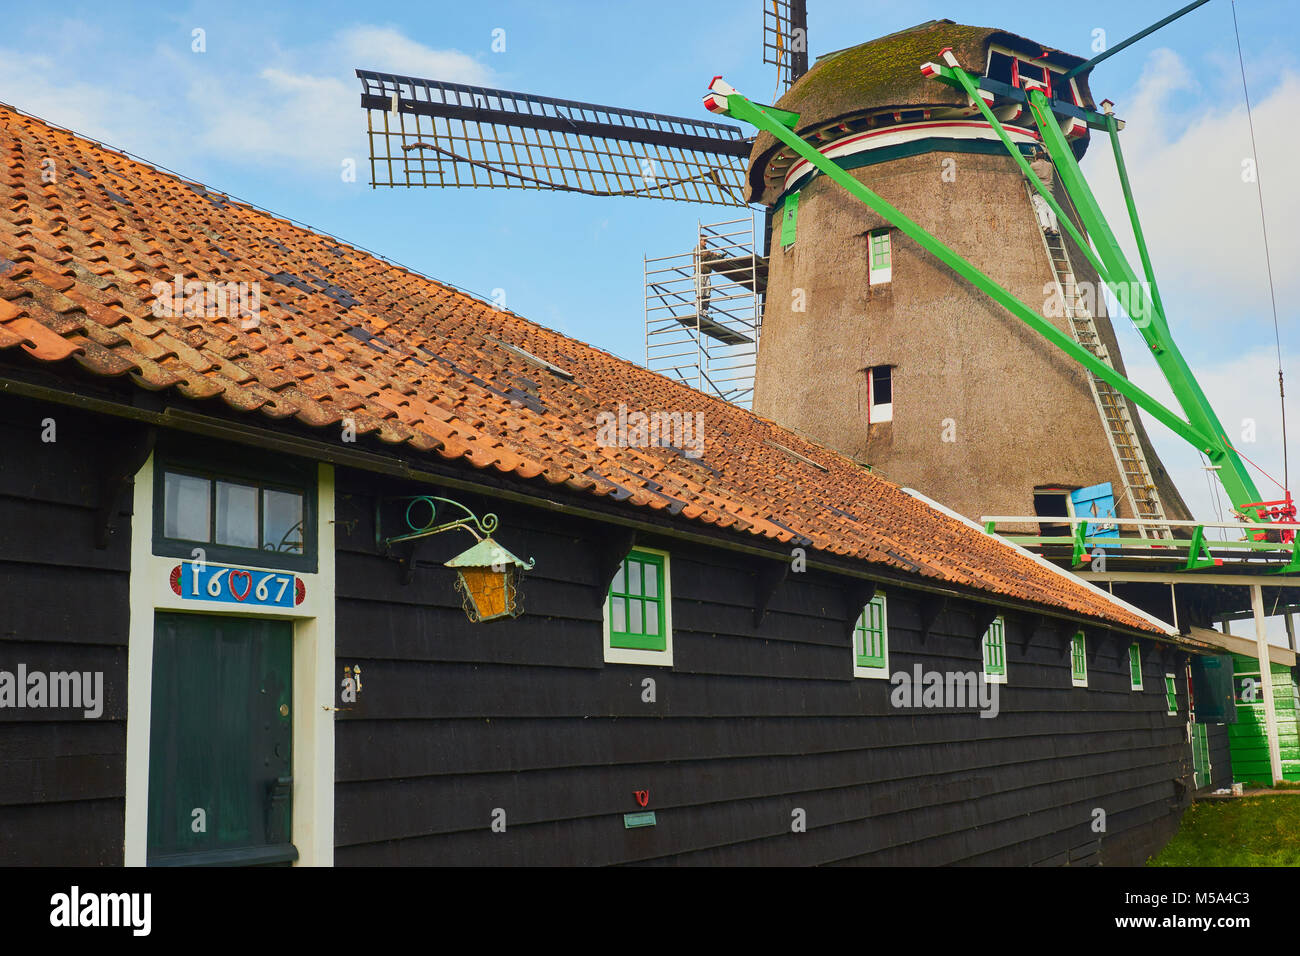 Bâtiment en bois du 17ème siècle et l'homme sur l'échelle de la décoration moulin Zaanse Schans, un village près de Zaandijk municipalité de Zaanstad, Pays-Bas. Banque D'Images